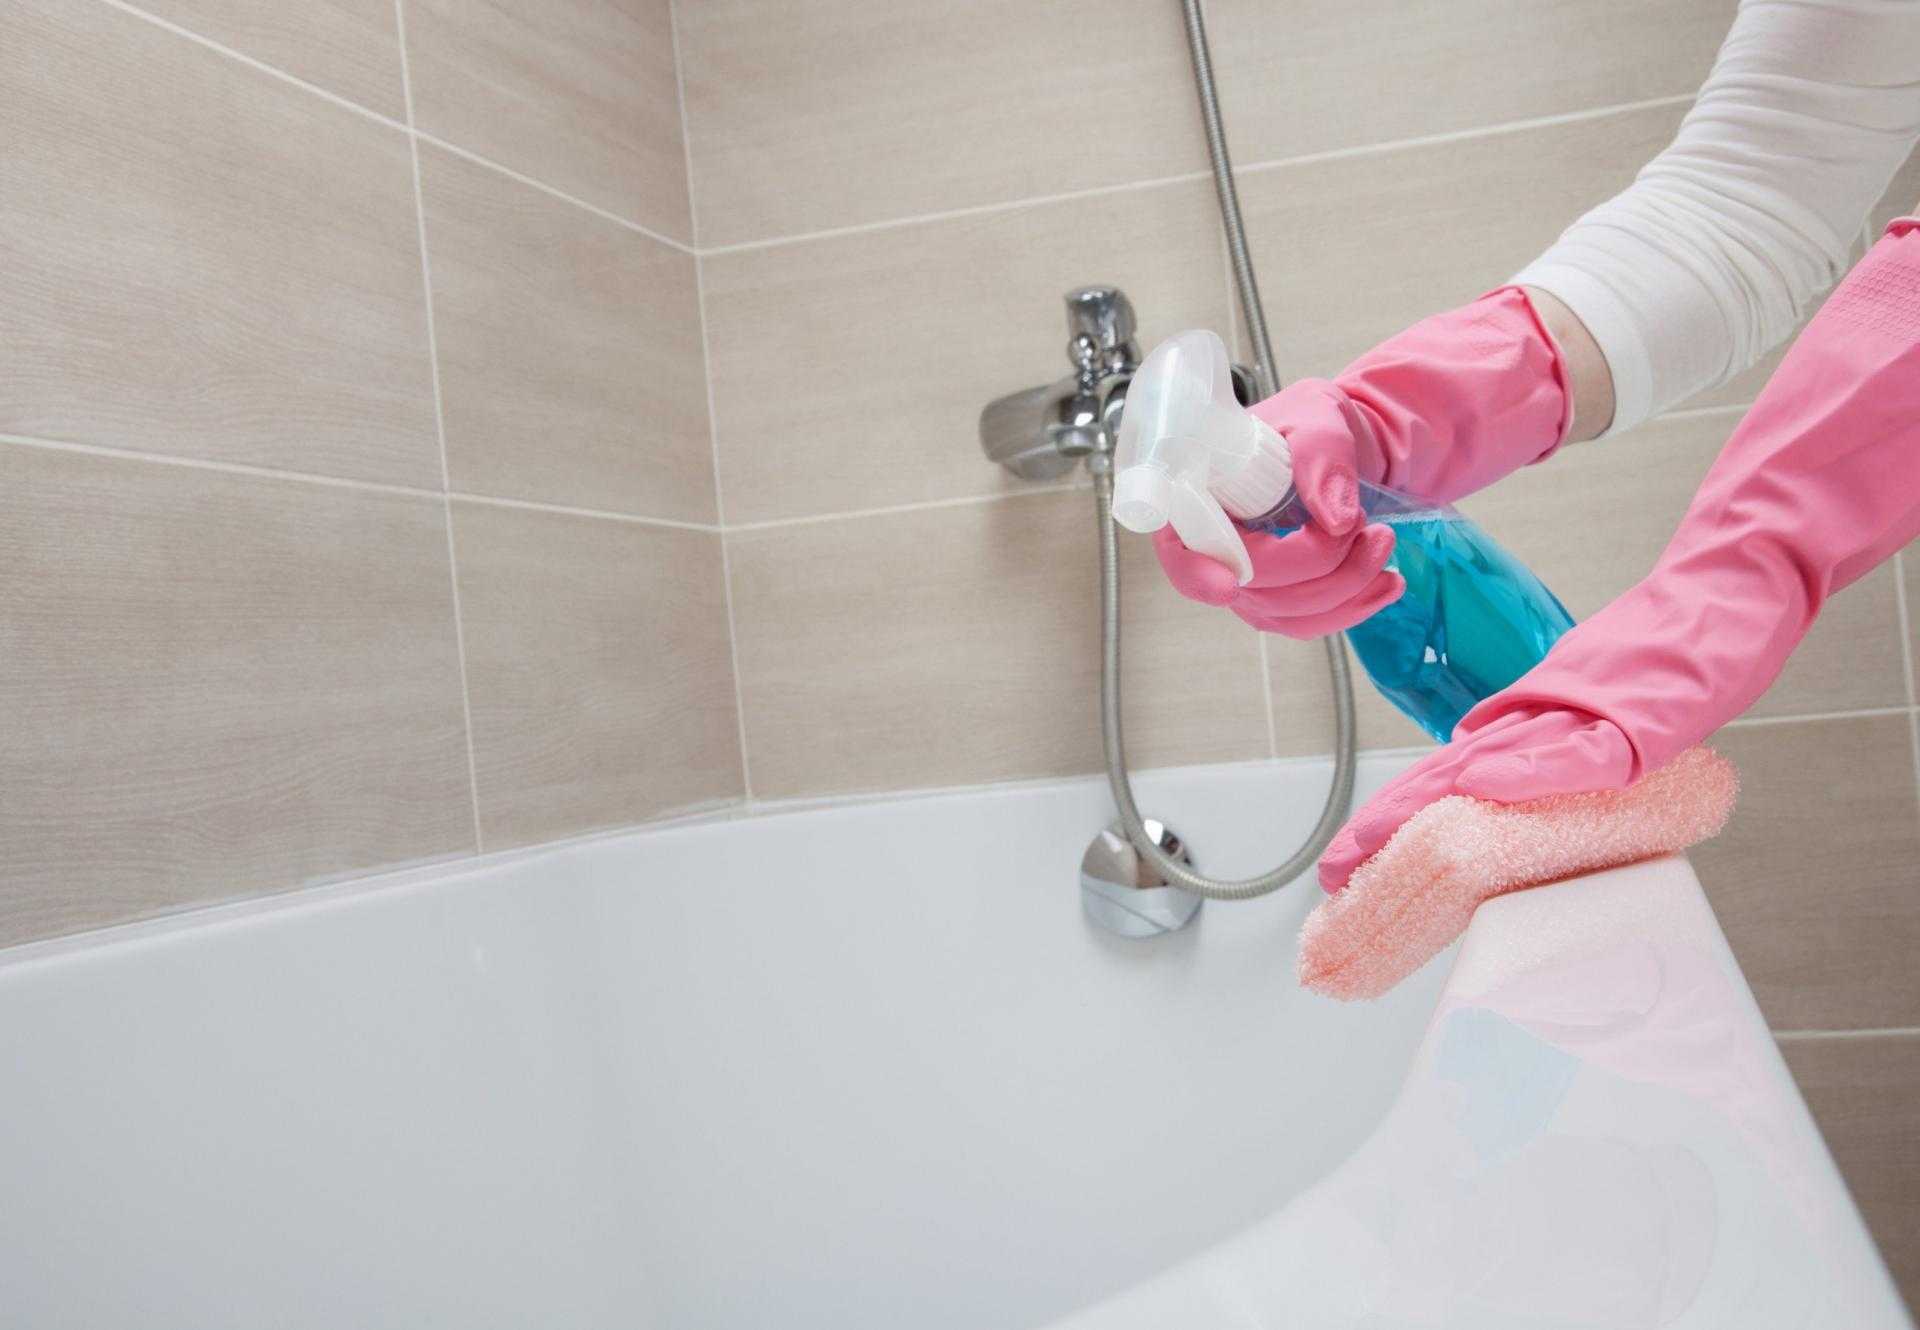 Причины и виды загрязнений ванны Как подобрать специальные и народные средства Отбеливание акриловой и чугунной ванны Правила ухода